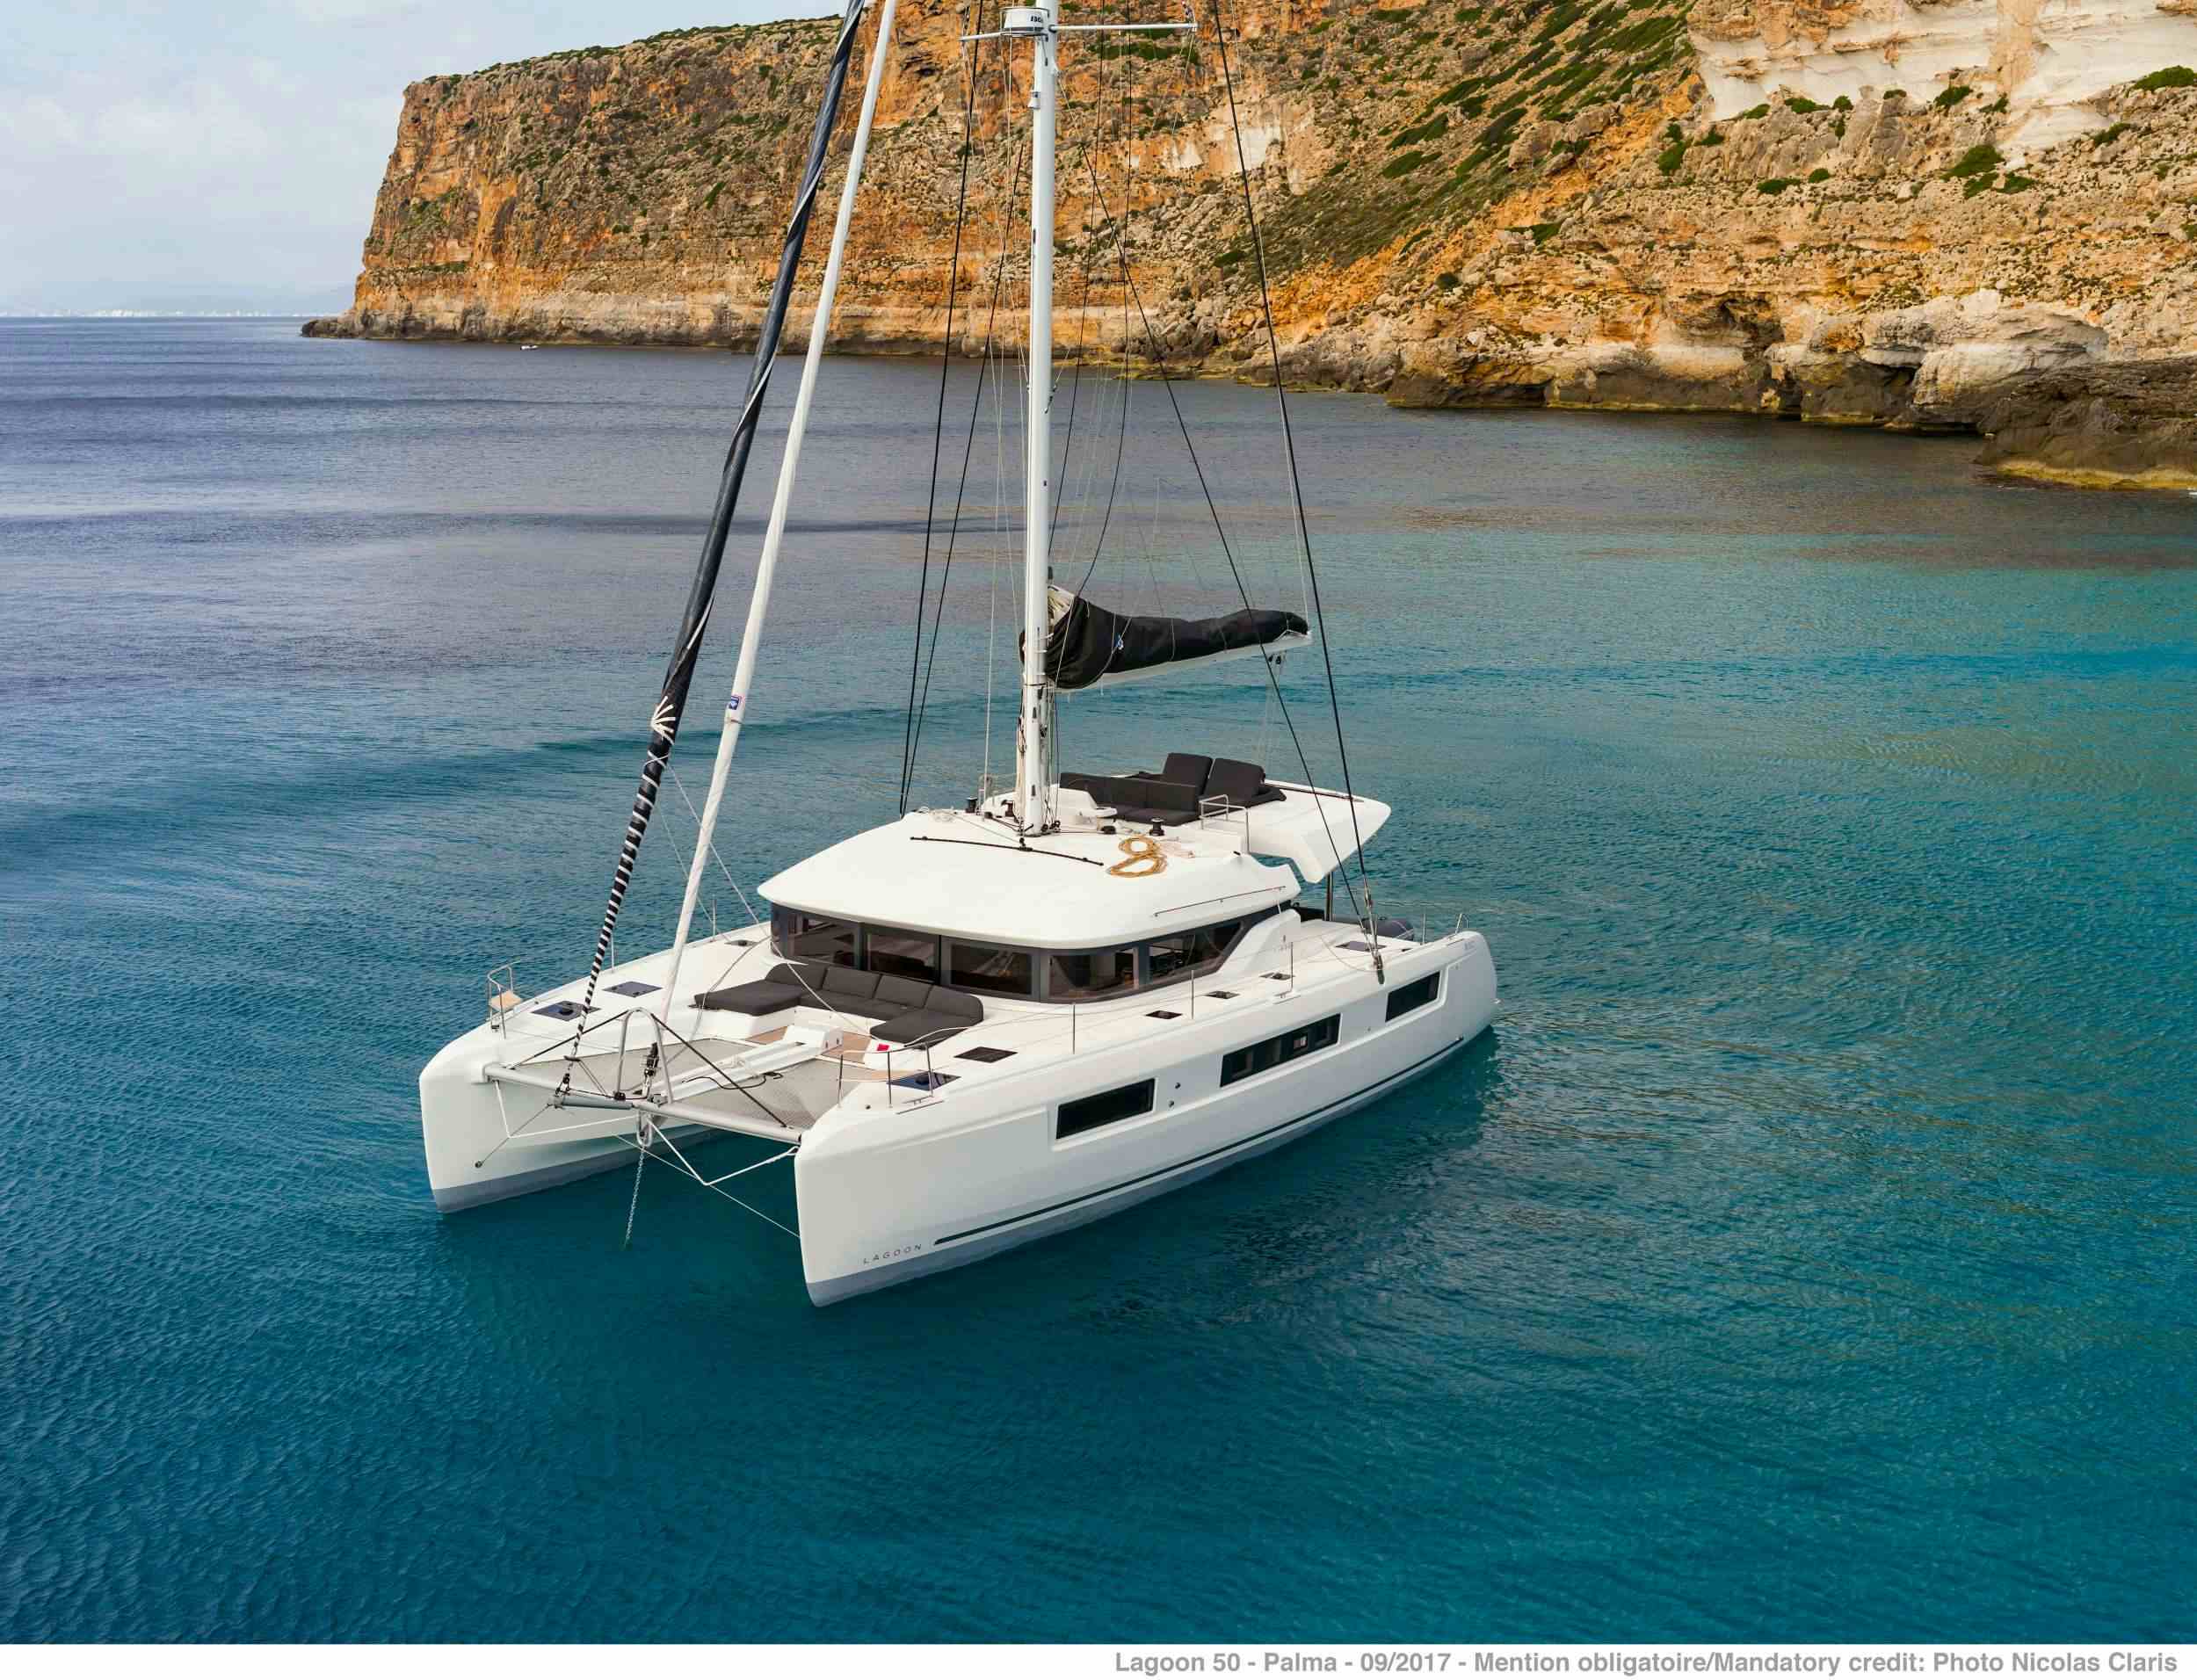 ONEIDA 2 - Yacht Charter Marina di Montenero di Bisaccia & Boat hire in Greece 1